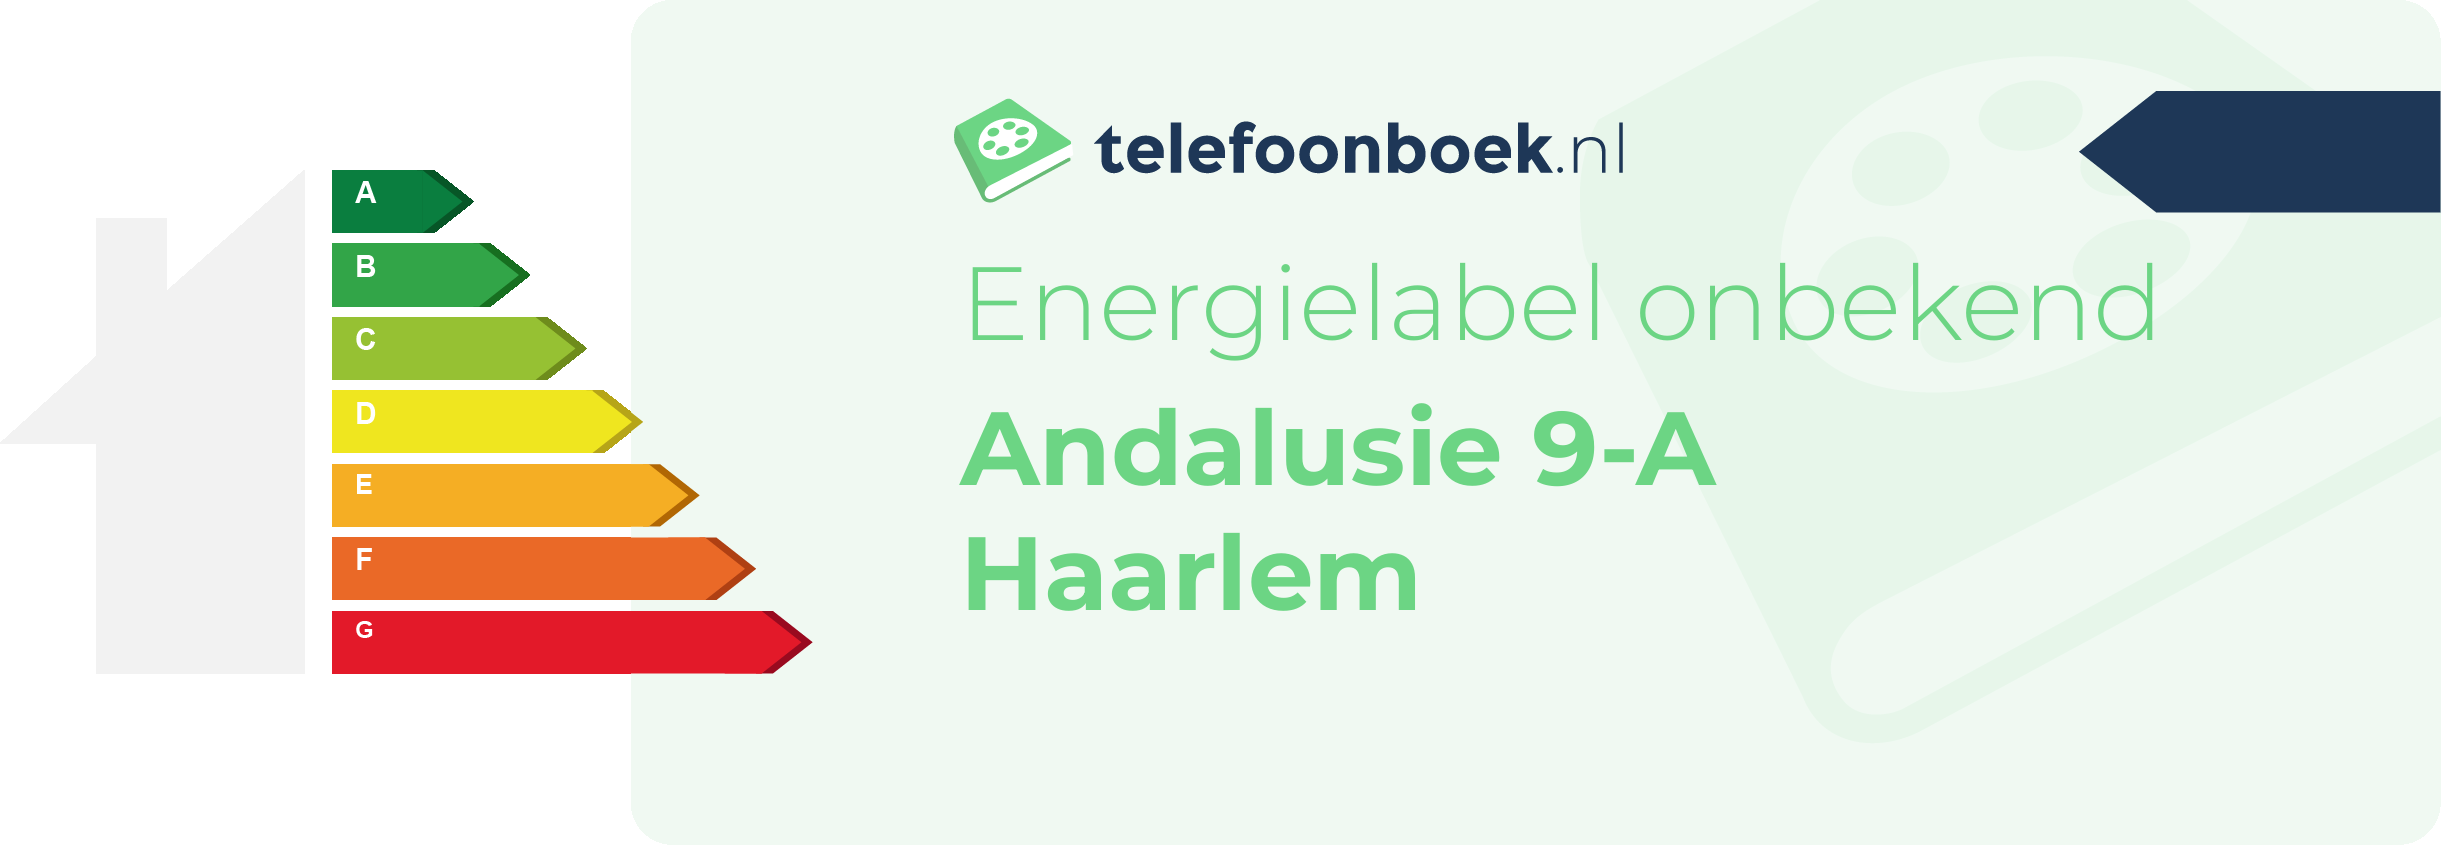 Energielabel Andalusie 9-A Haarlem